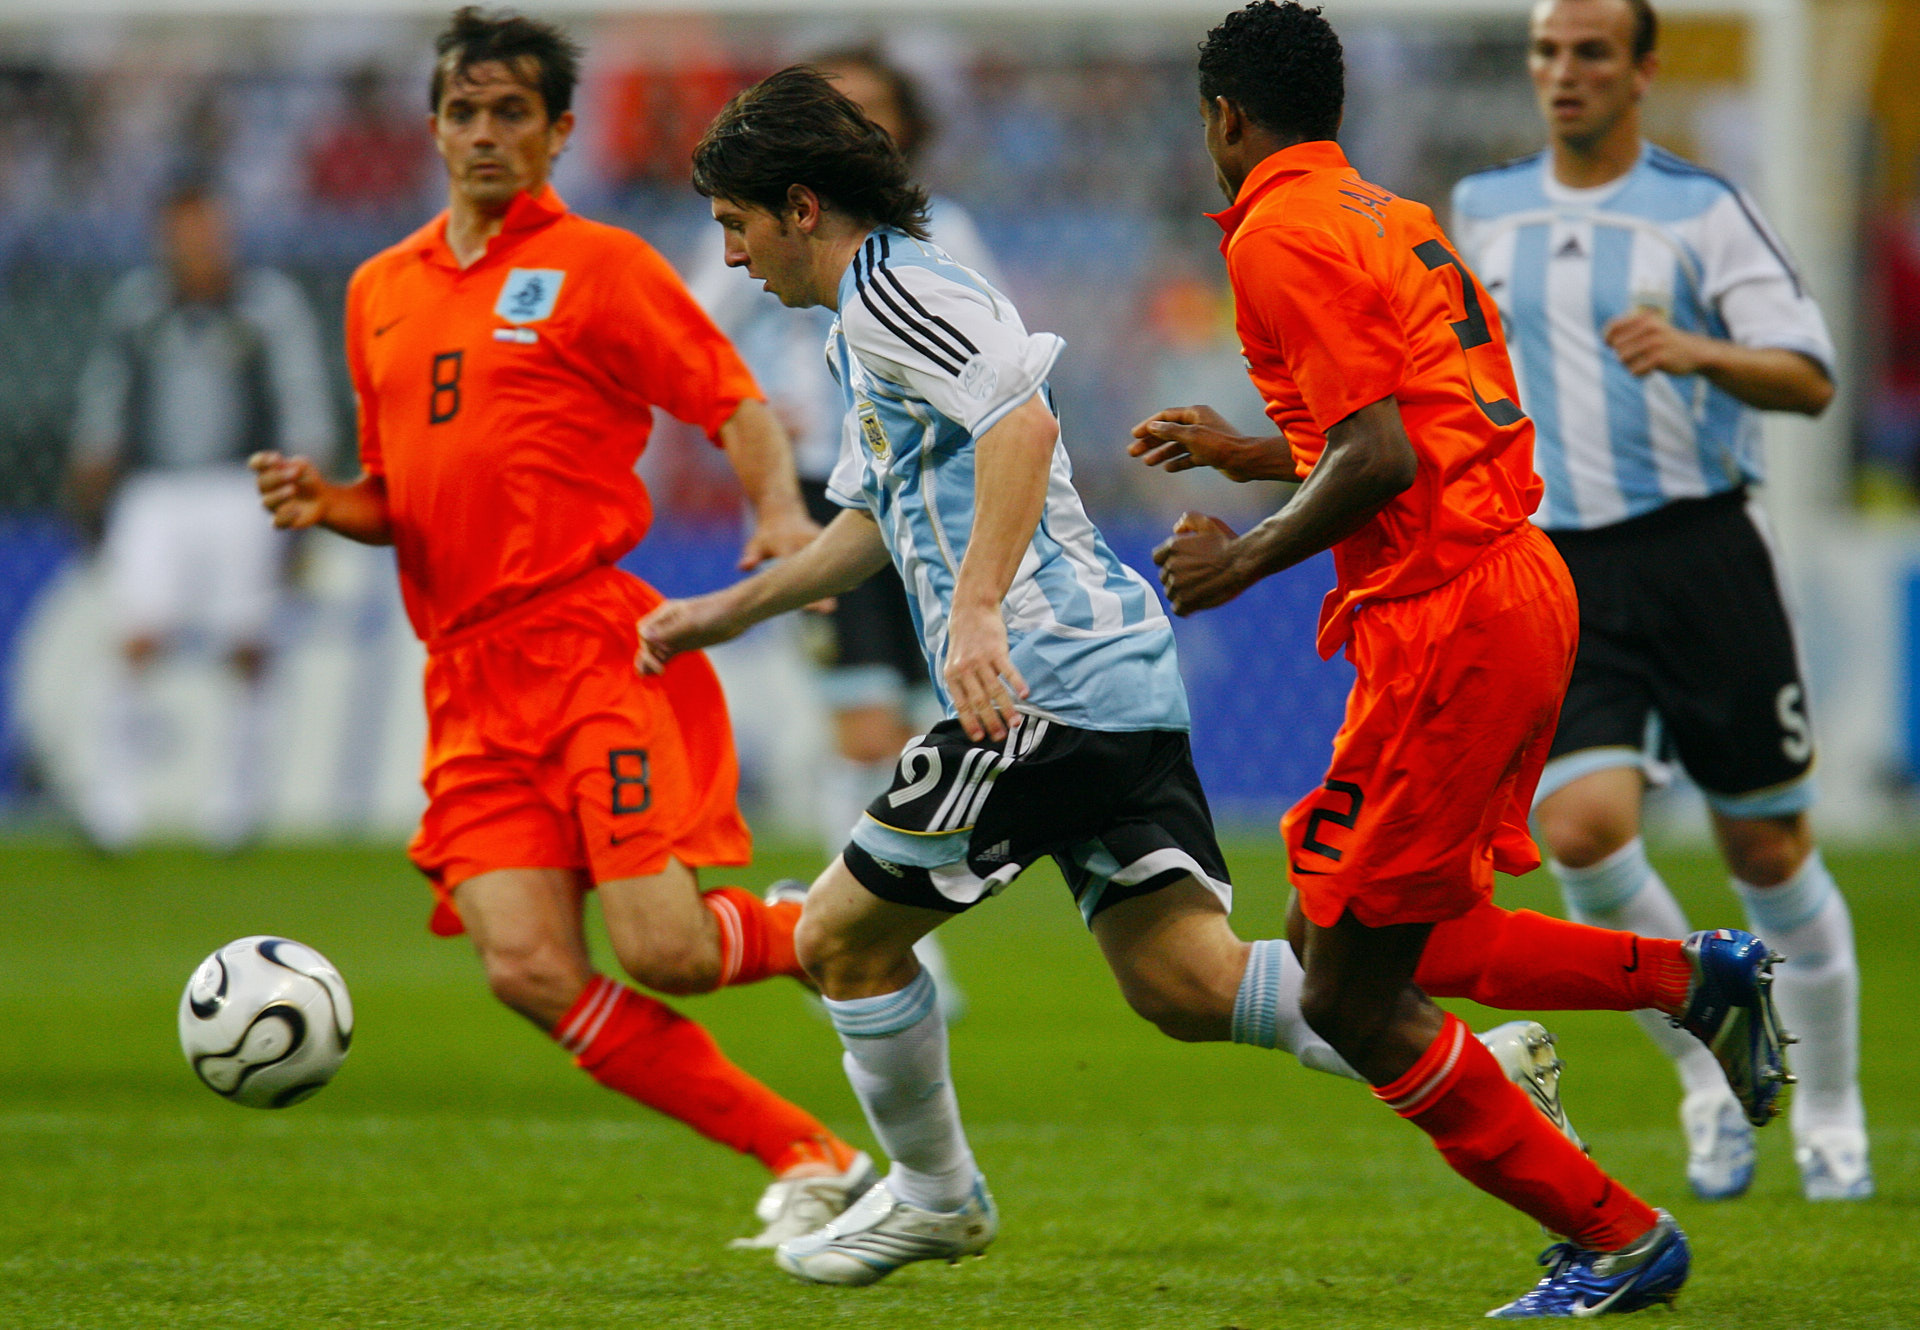 Lionel Messi, Argentina v. Netherlands, 2006 WC